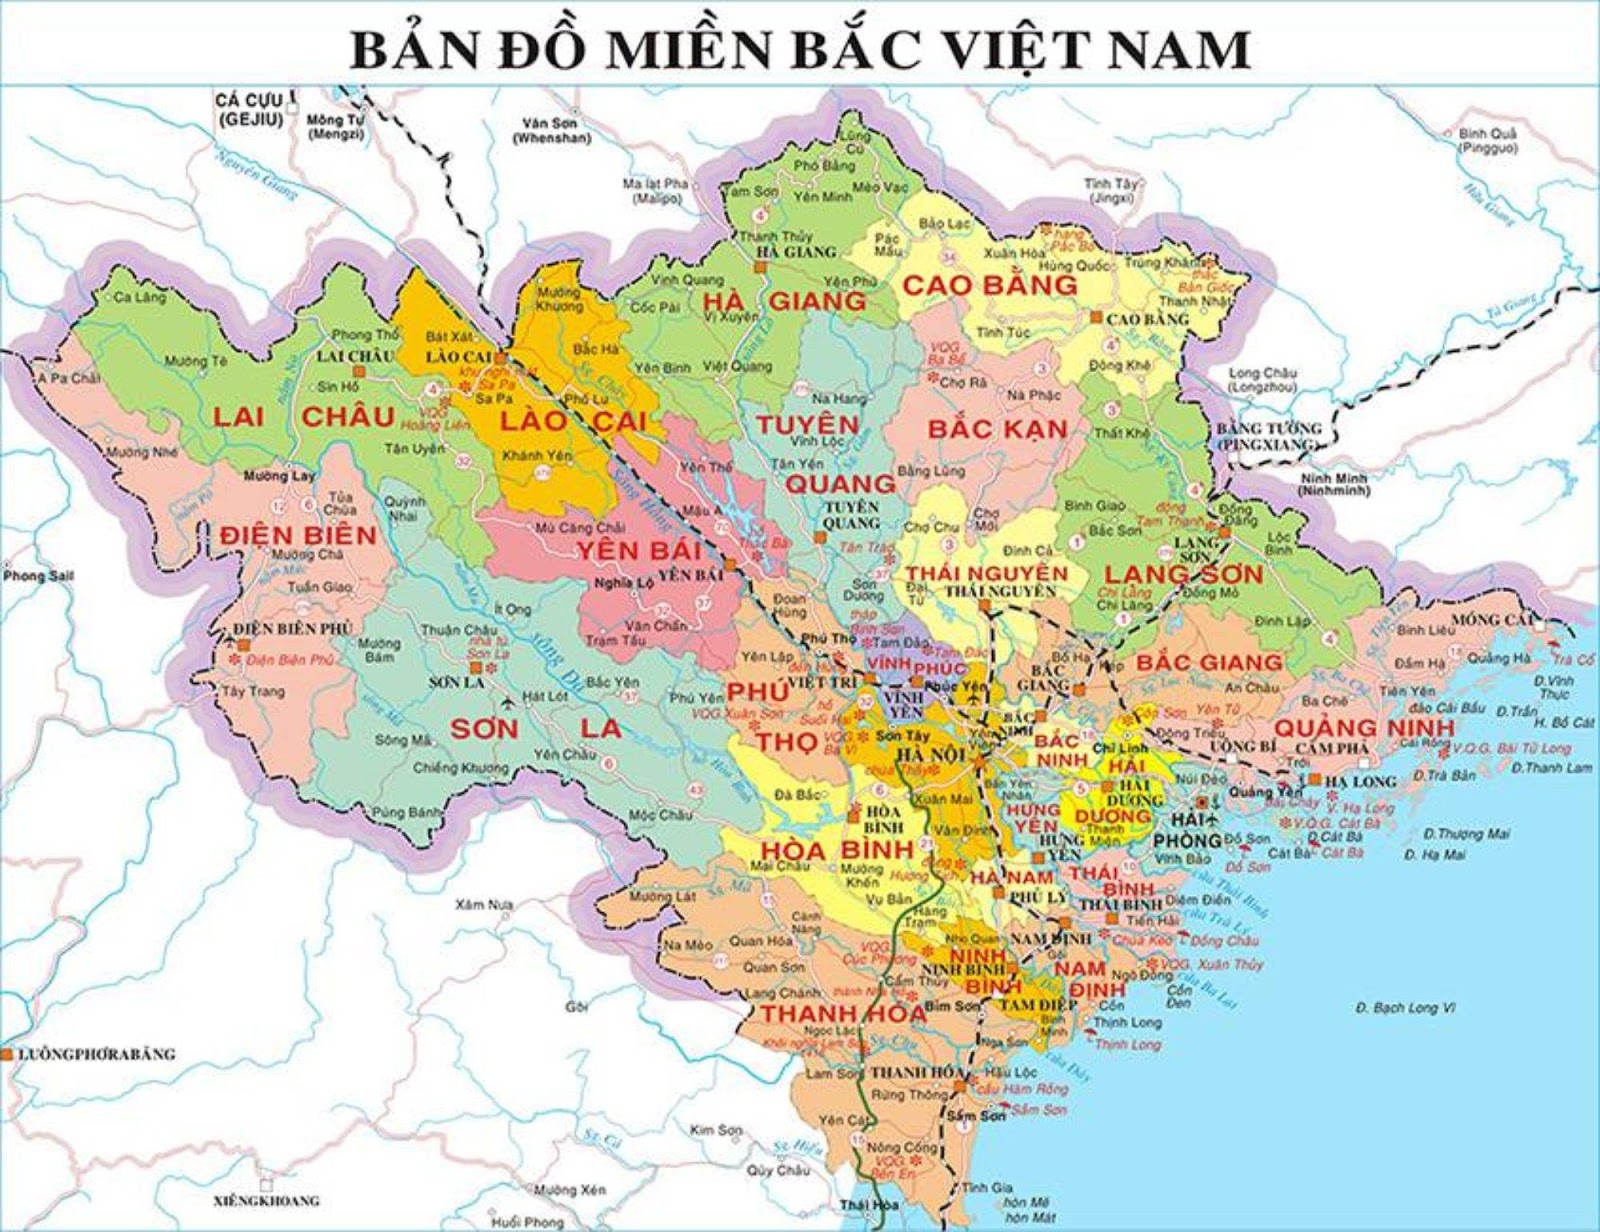 Khám phá bản đồ miền Bắc Việt Nam cập nhật năm 2024, tìm hiểu về các tỉnh thành với các điểm du lịch hấp dẫn. Hãy tận hưởng vẻ đẹp của núi rừng, thung lũng, sông suối tươi đẹp. Xem hình ảnh liên quan đến bản đồ miền Bắc Việt Nam và đắm mình trong màu xanh mát của thiên nhiên.